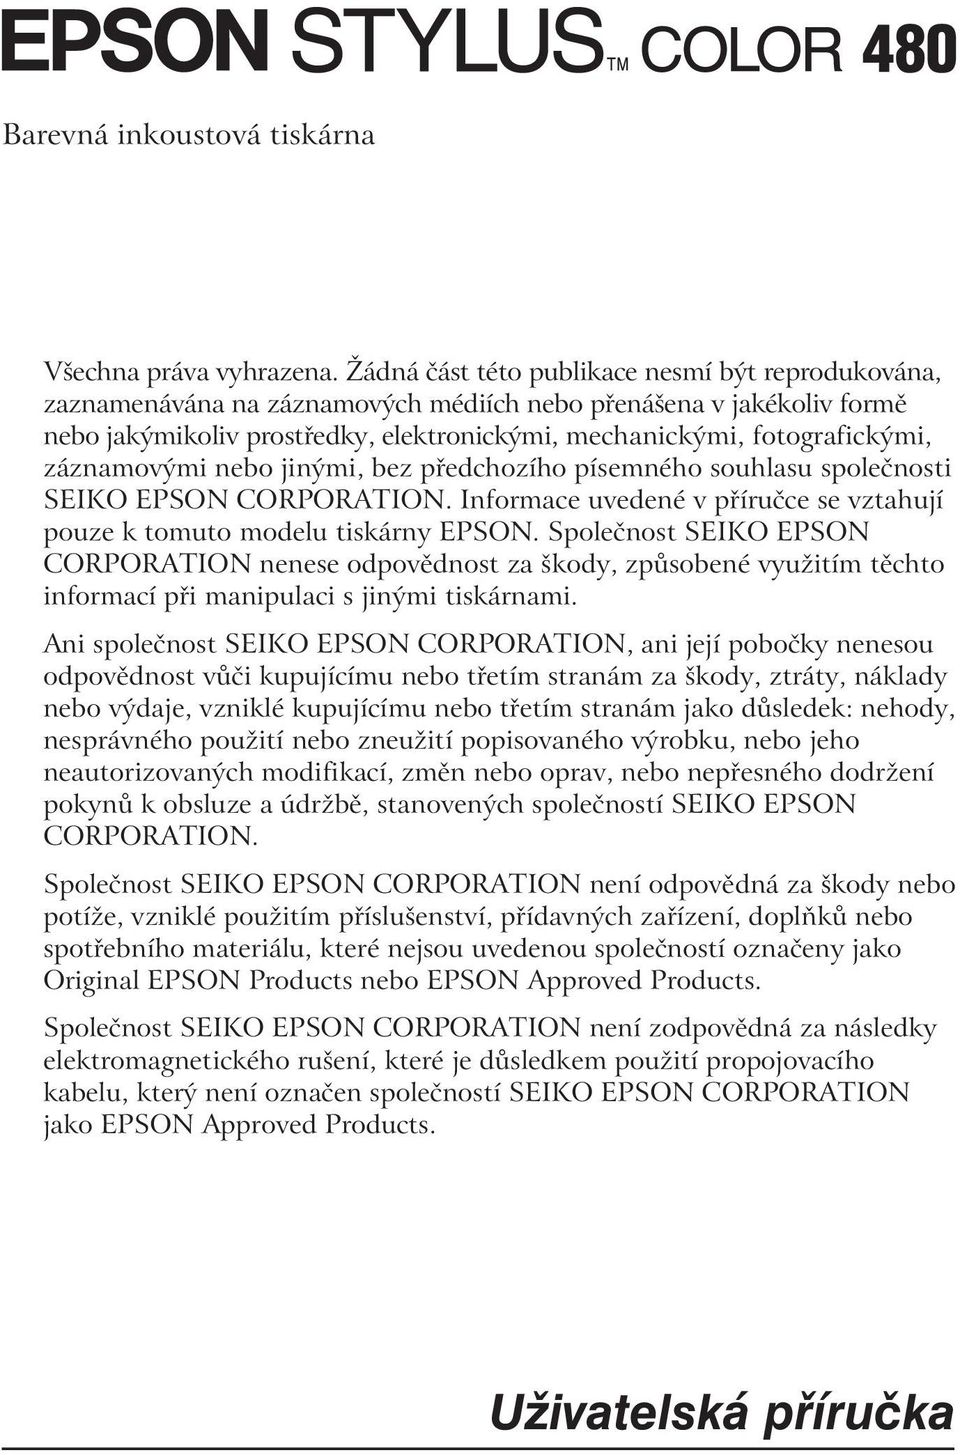 záznamovými nebo jinými, bez předchozího písemného souhlasu společnosti SEIKO EPSON CORPORATION. Informace uvedené v příručce se vztahují pouze k tomuto modelu tiskárny EPSON.